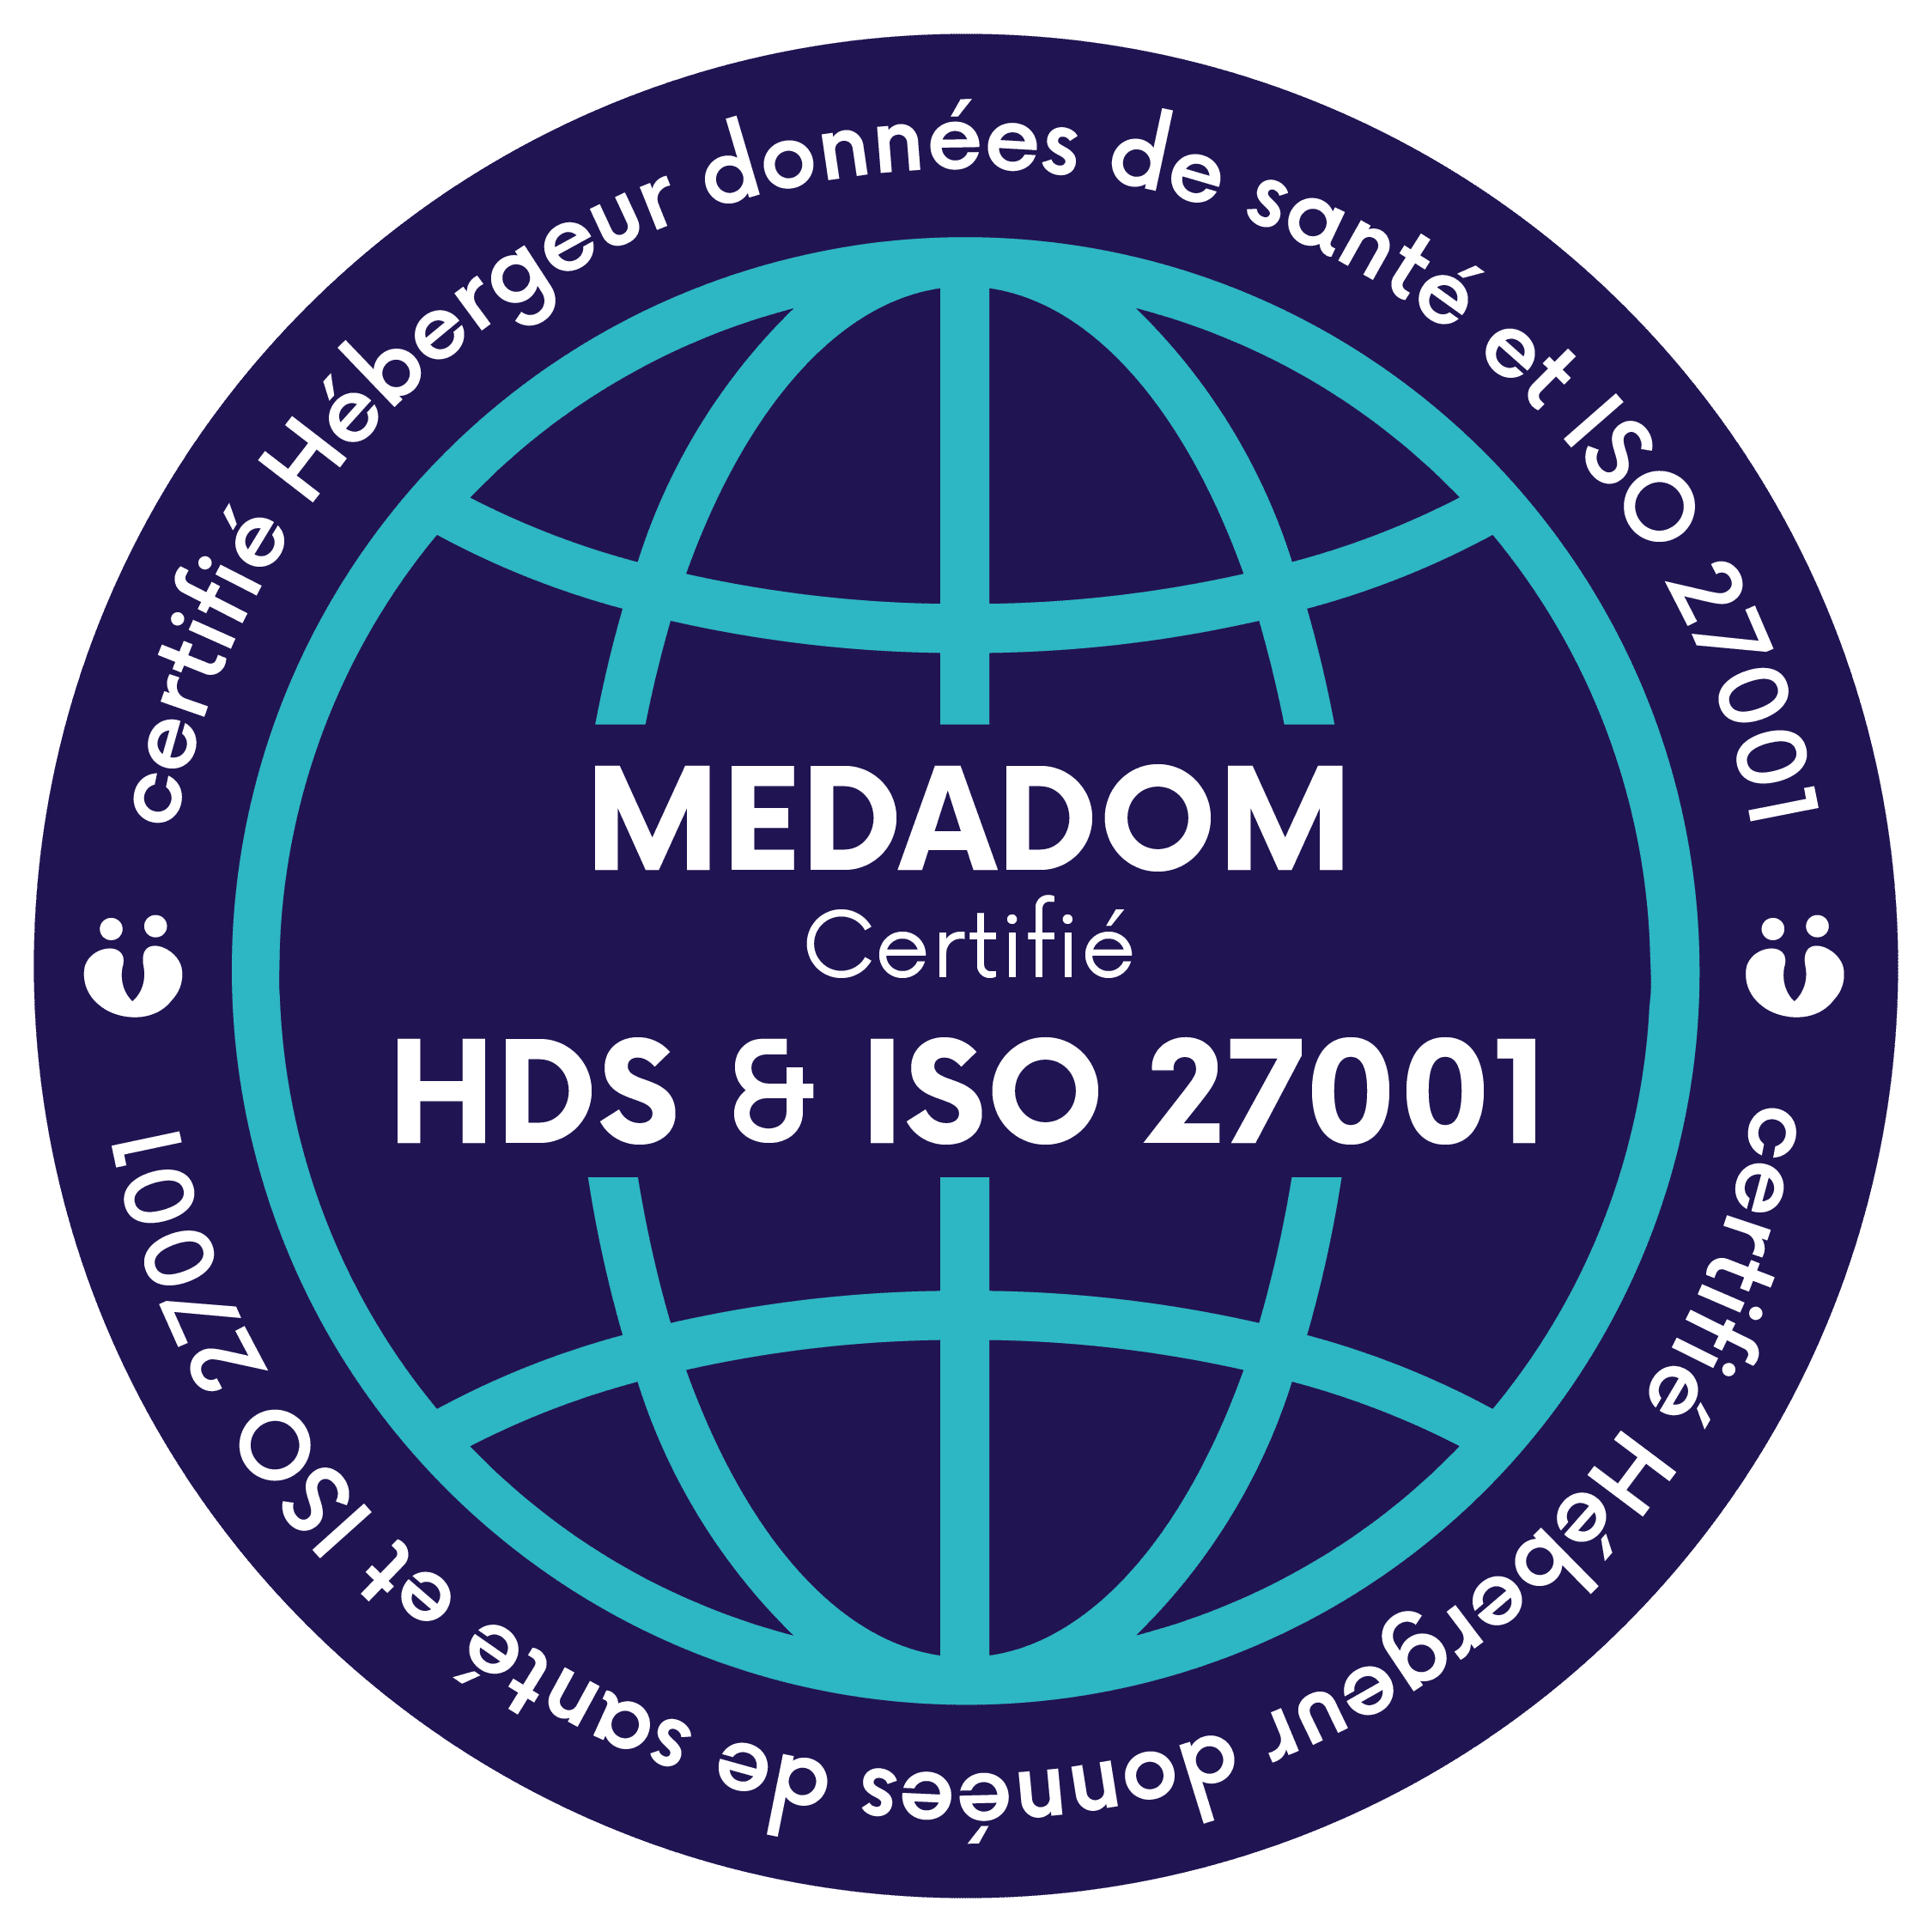 MEDADOM obtient la certification Hébergeur de données de santé (HDS) et la certification à la norme ISO 27001.